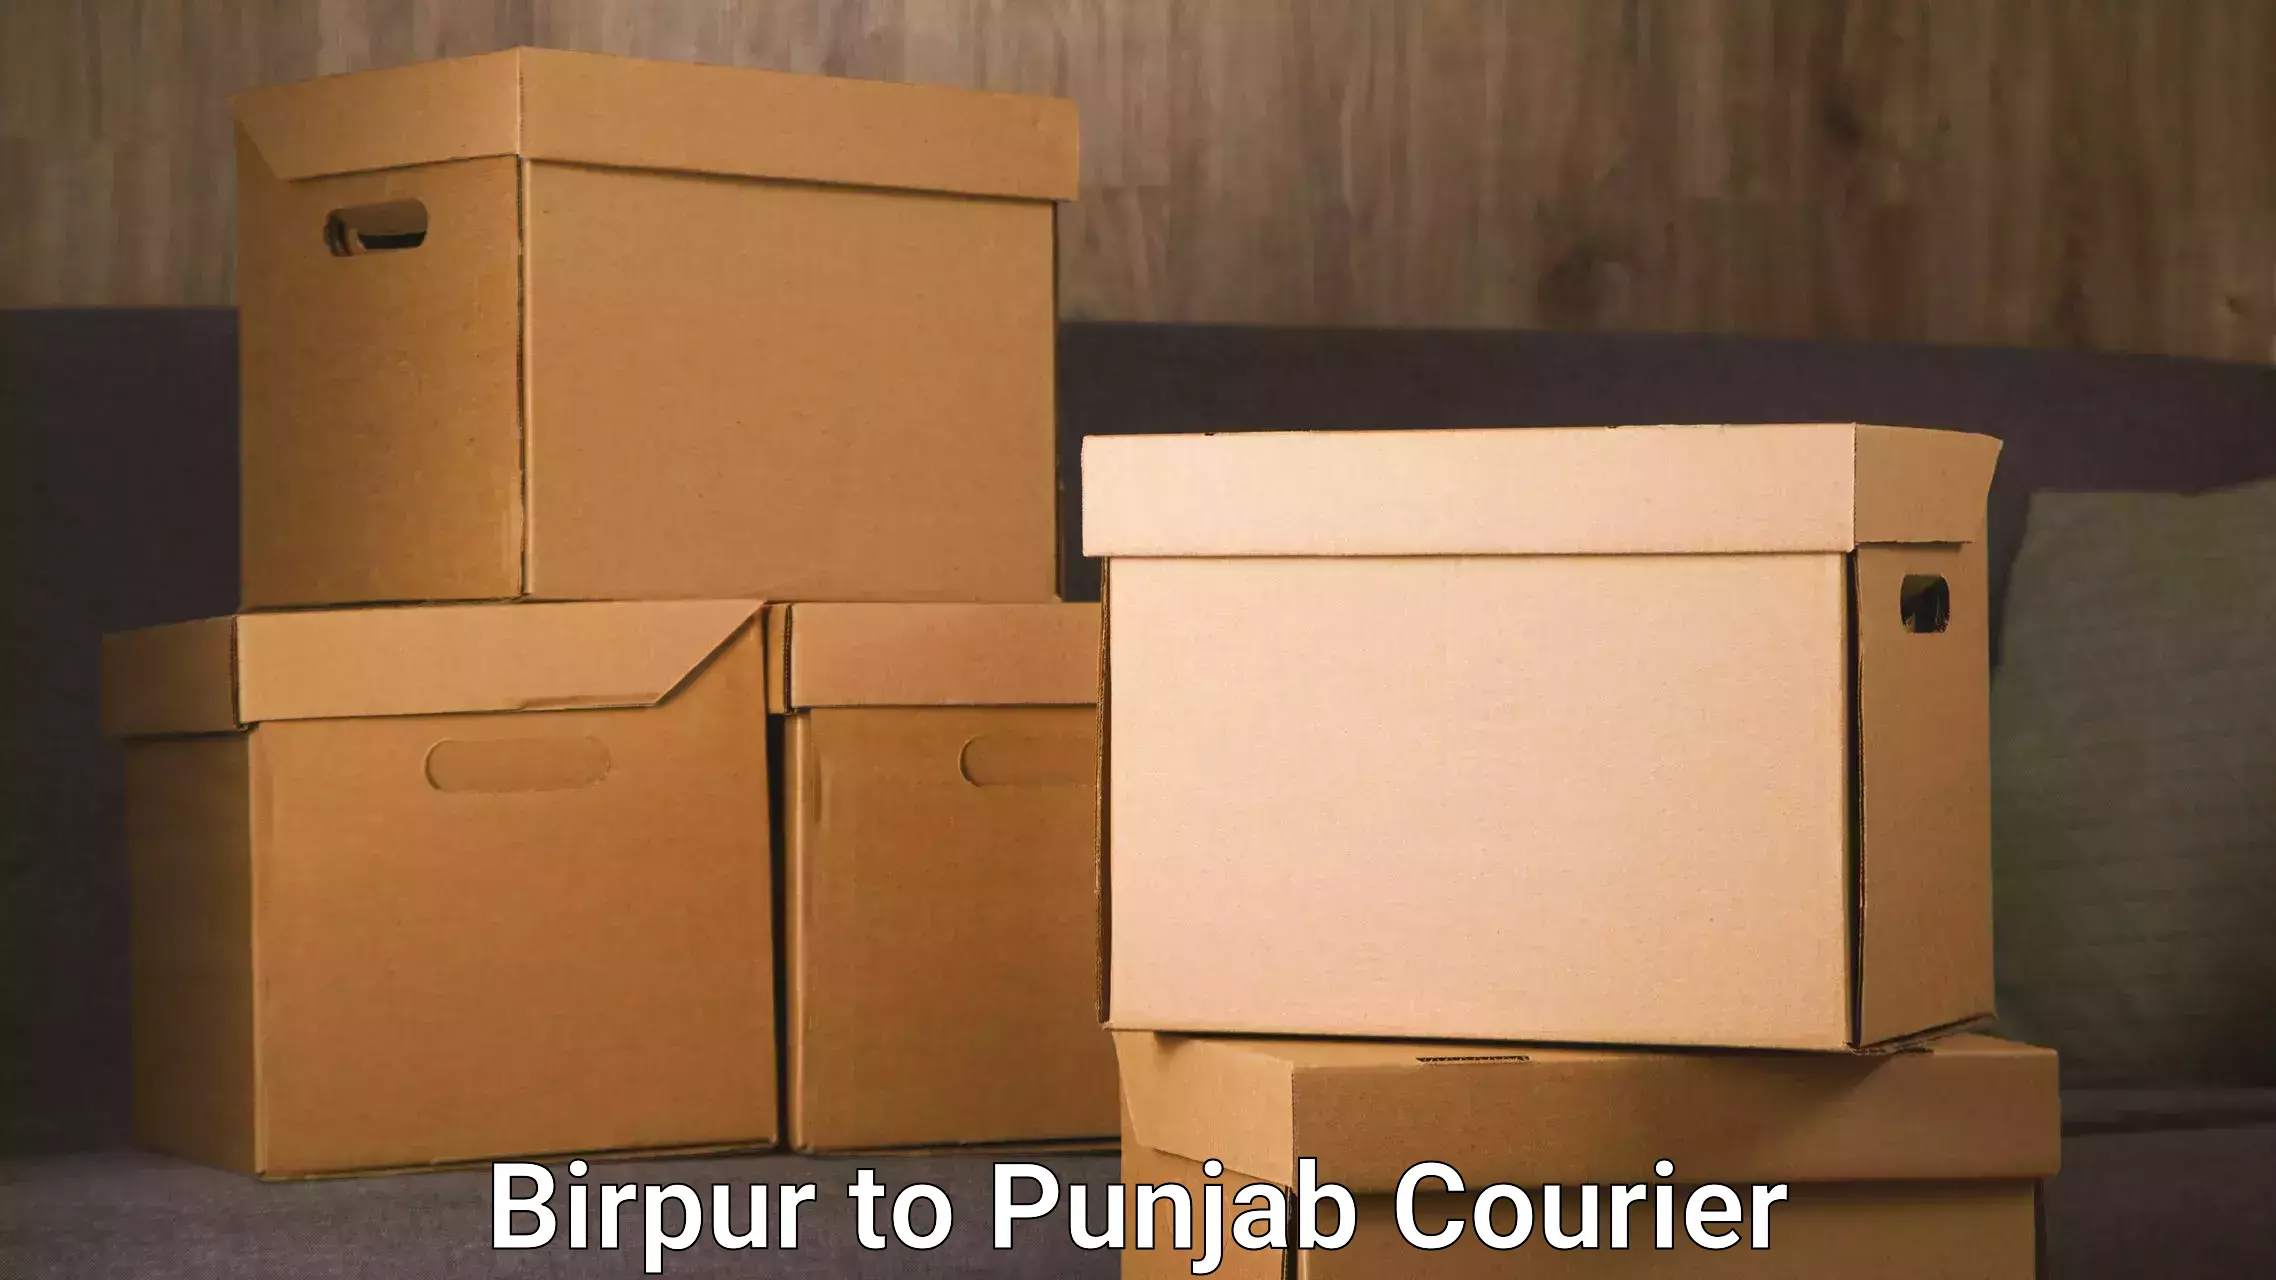 Furniture moving experts Birpur to Punjab